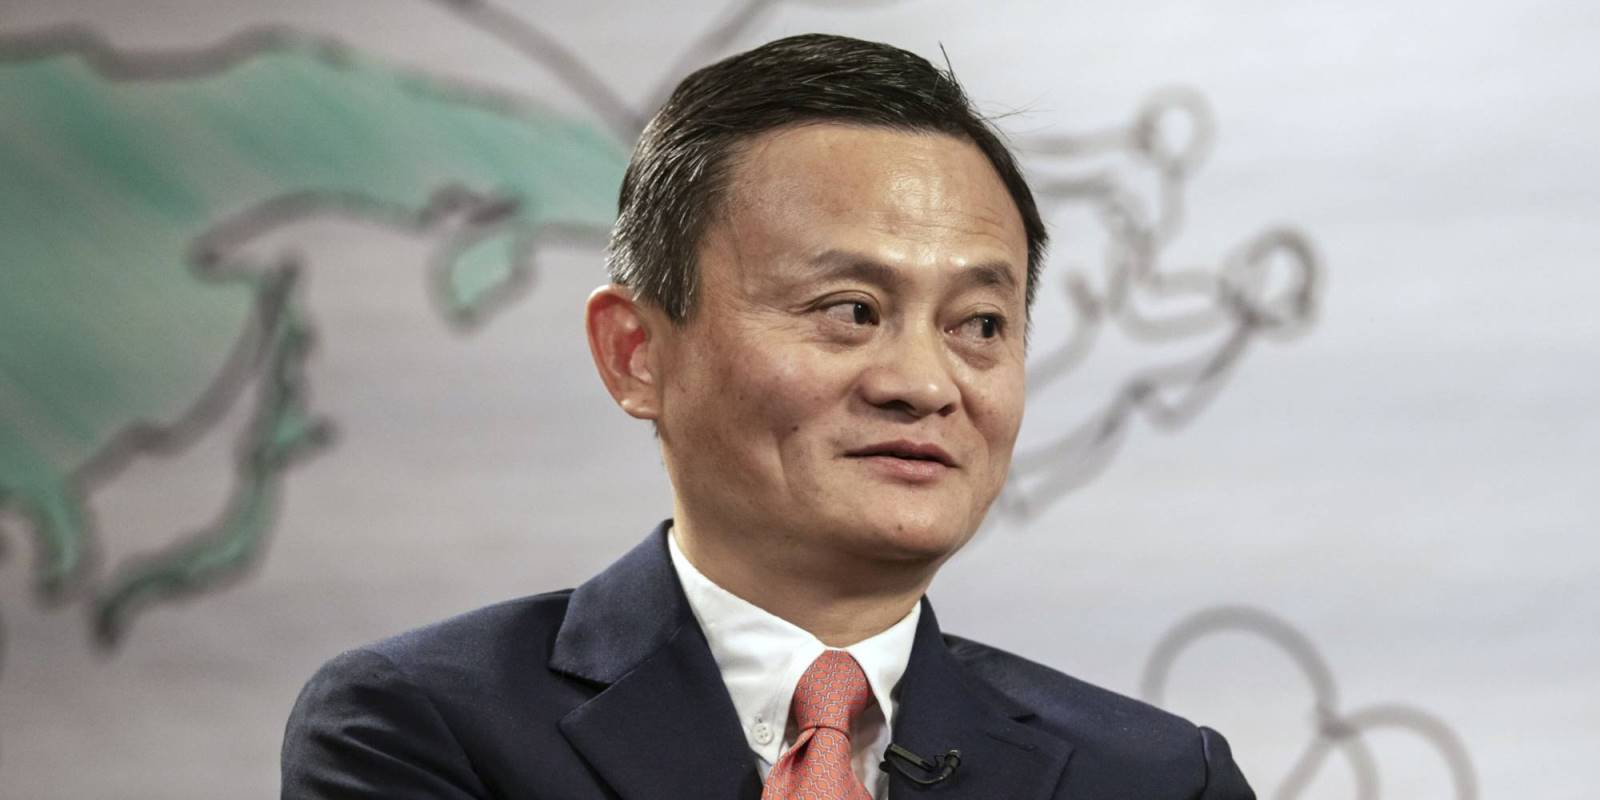 Τρεις Κορυφαίες Συμβουλές από τον Jack Ma, Ιδρυτή της Alibaba